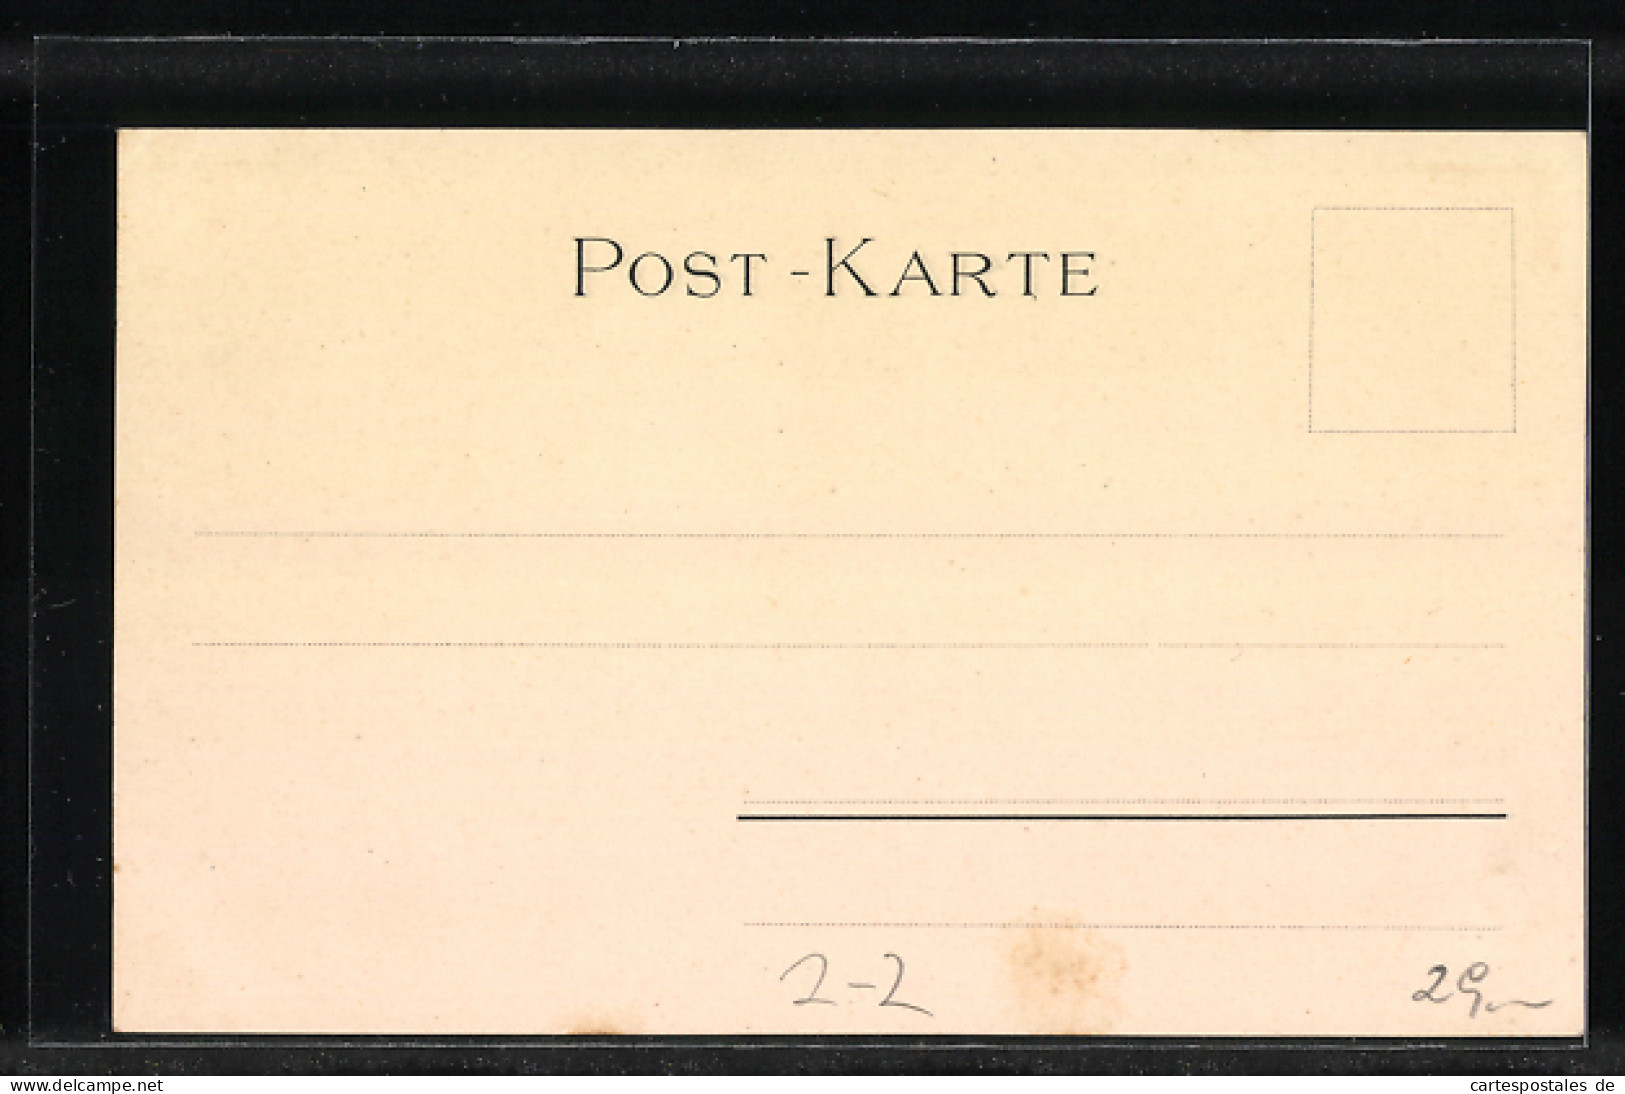 AK Deutsche Briefmarken 1 Groschen, 20 Centimes, 1 Kreuzer, 1 1 /4 Schilling  - Timbres (représentations)